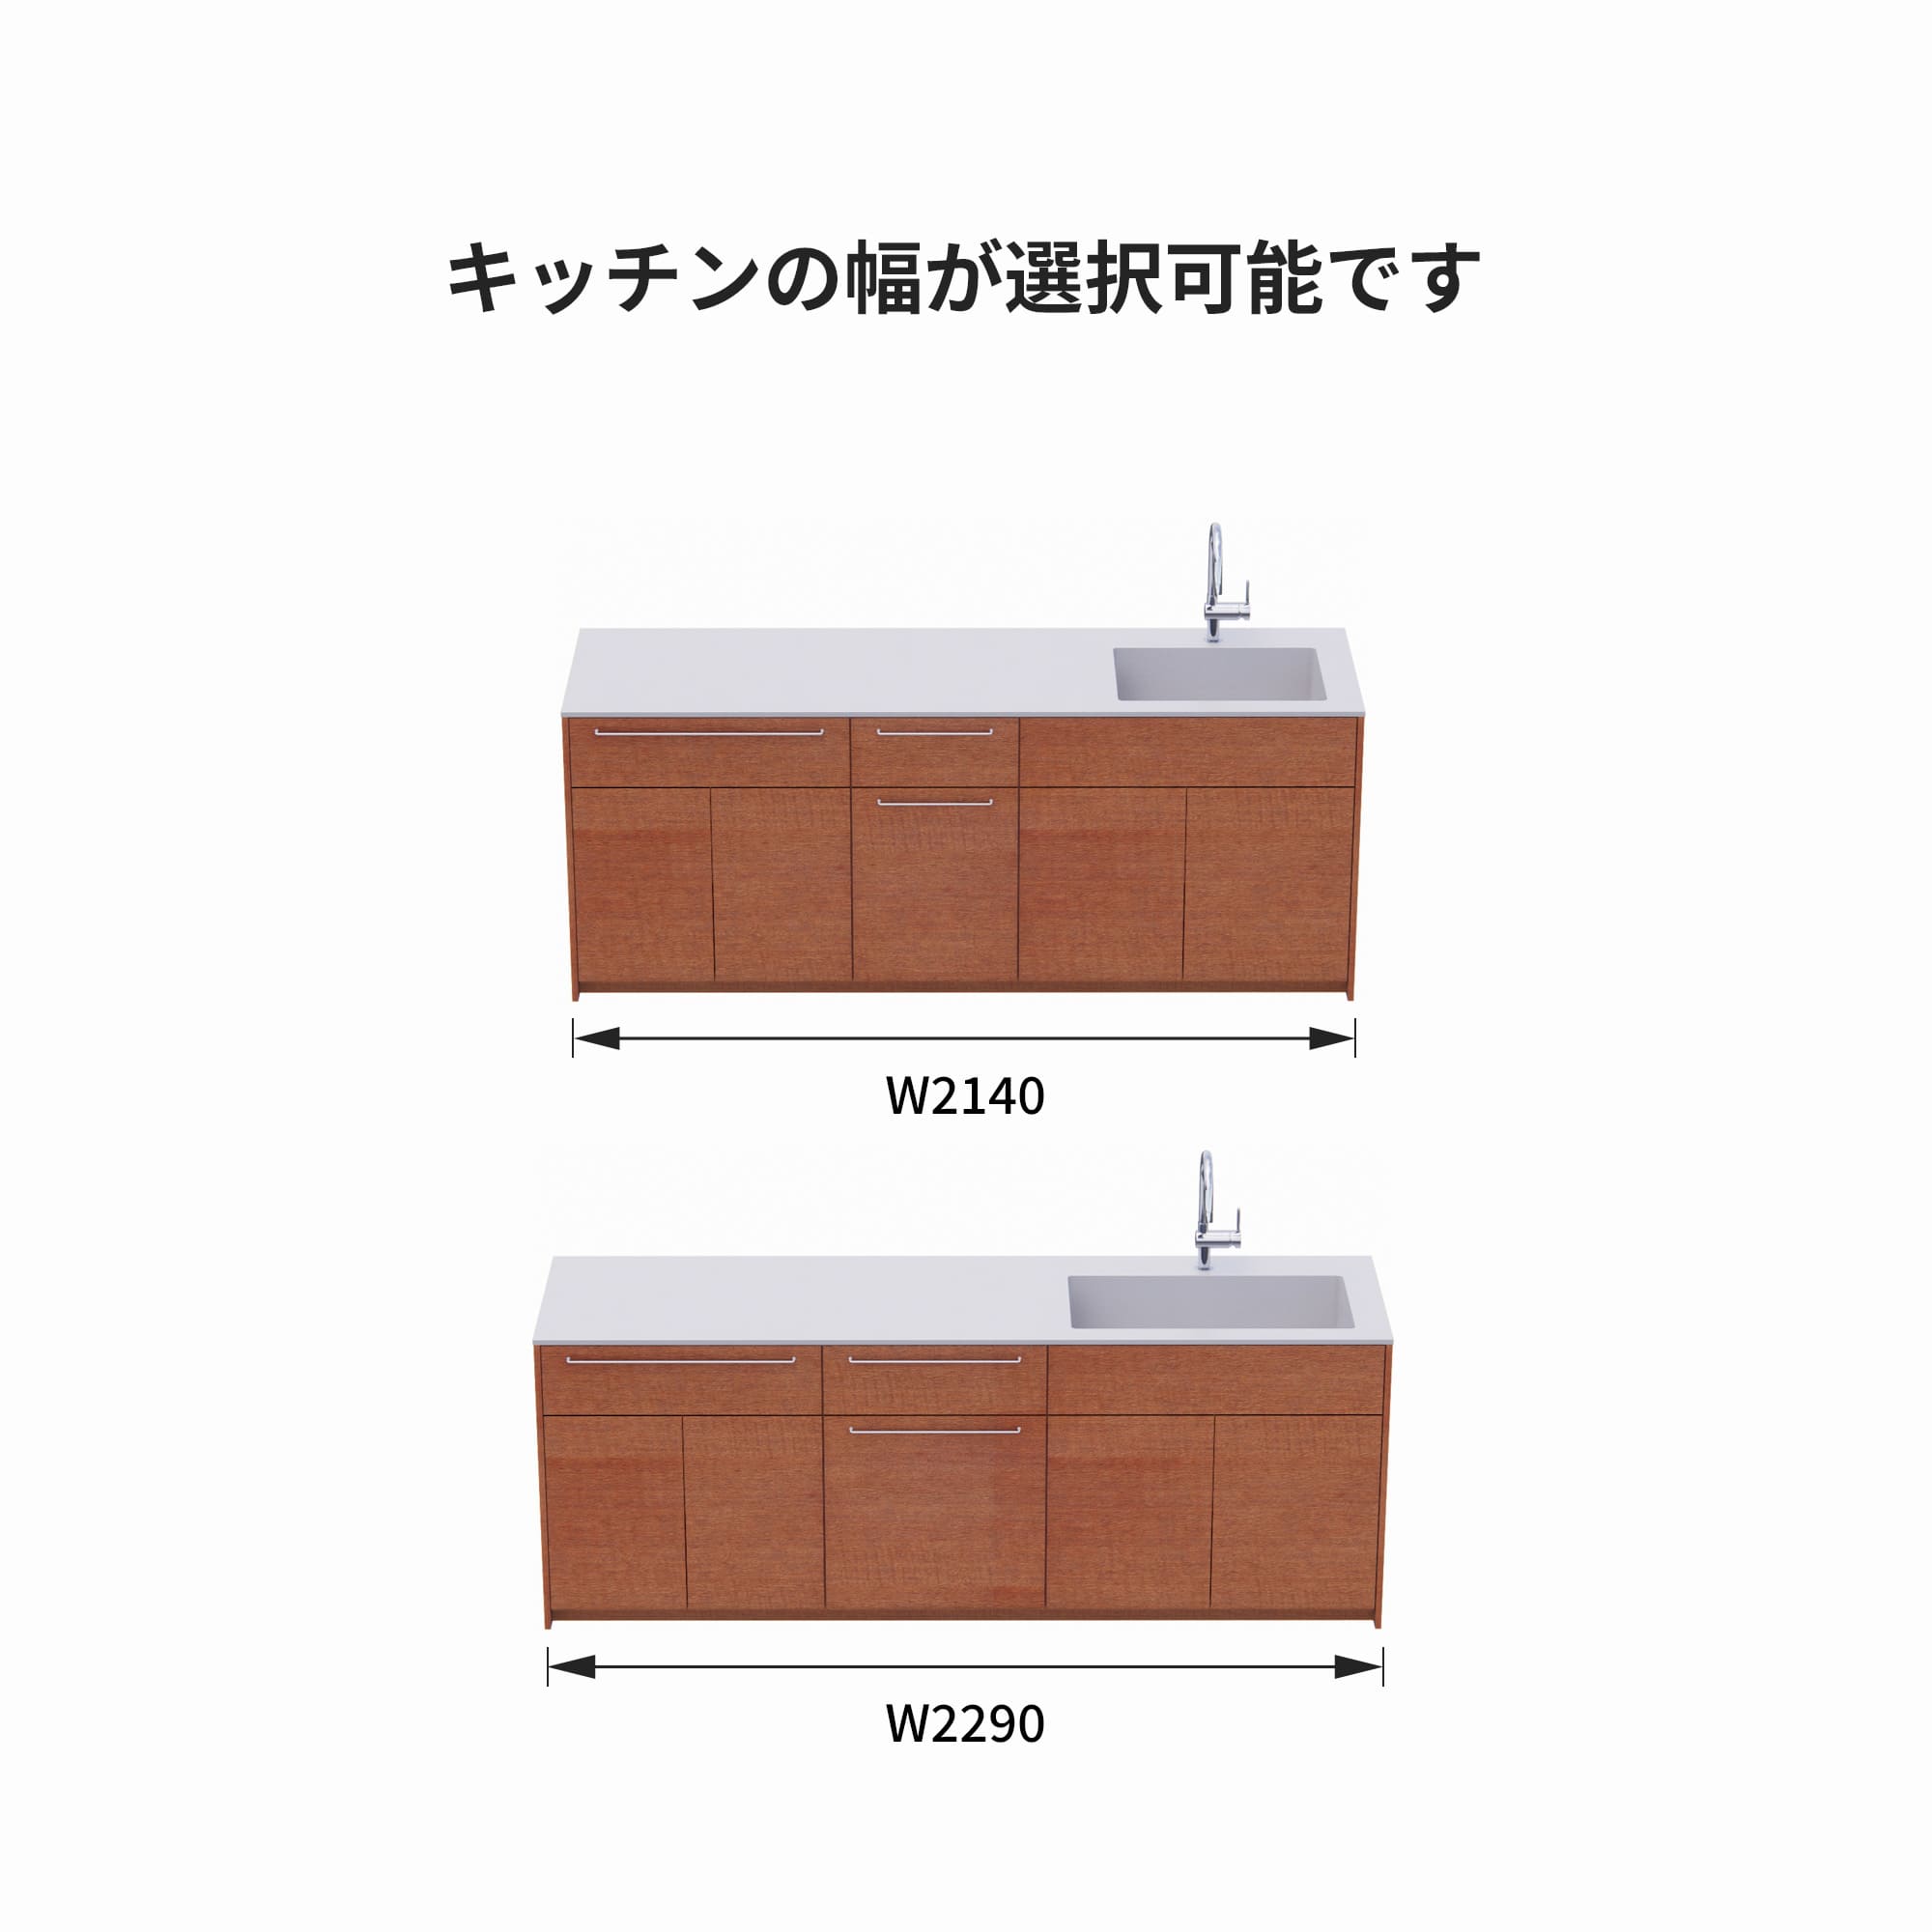 木製システムキッチン 壁付け型 W2140～2290・コンロなし / オーブンなし / 食洗機なし KB-KC022-18-G183 サイズはW2140と2290から選択可能です